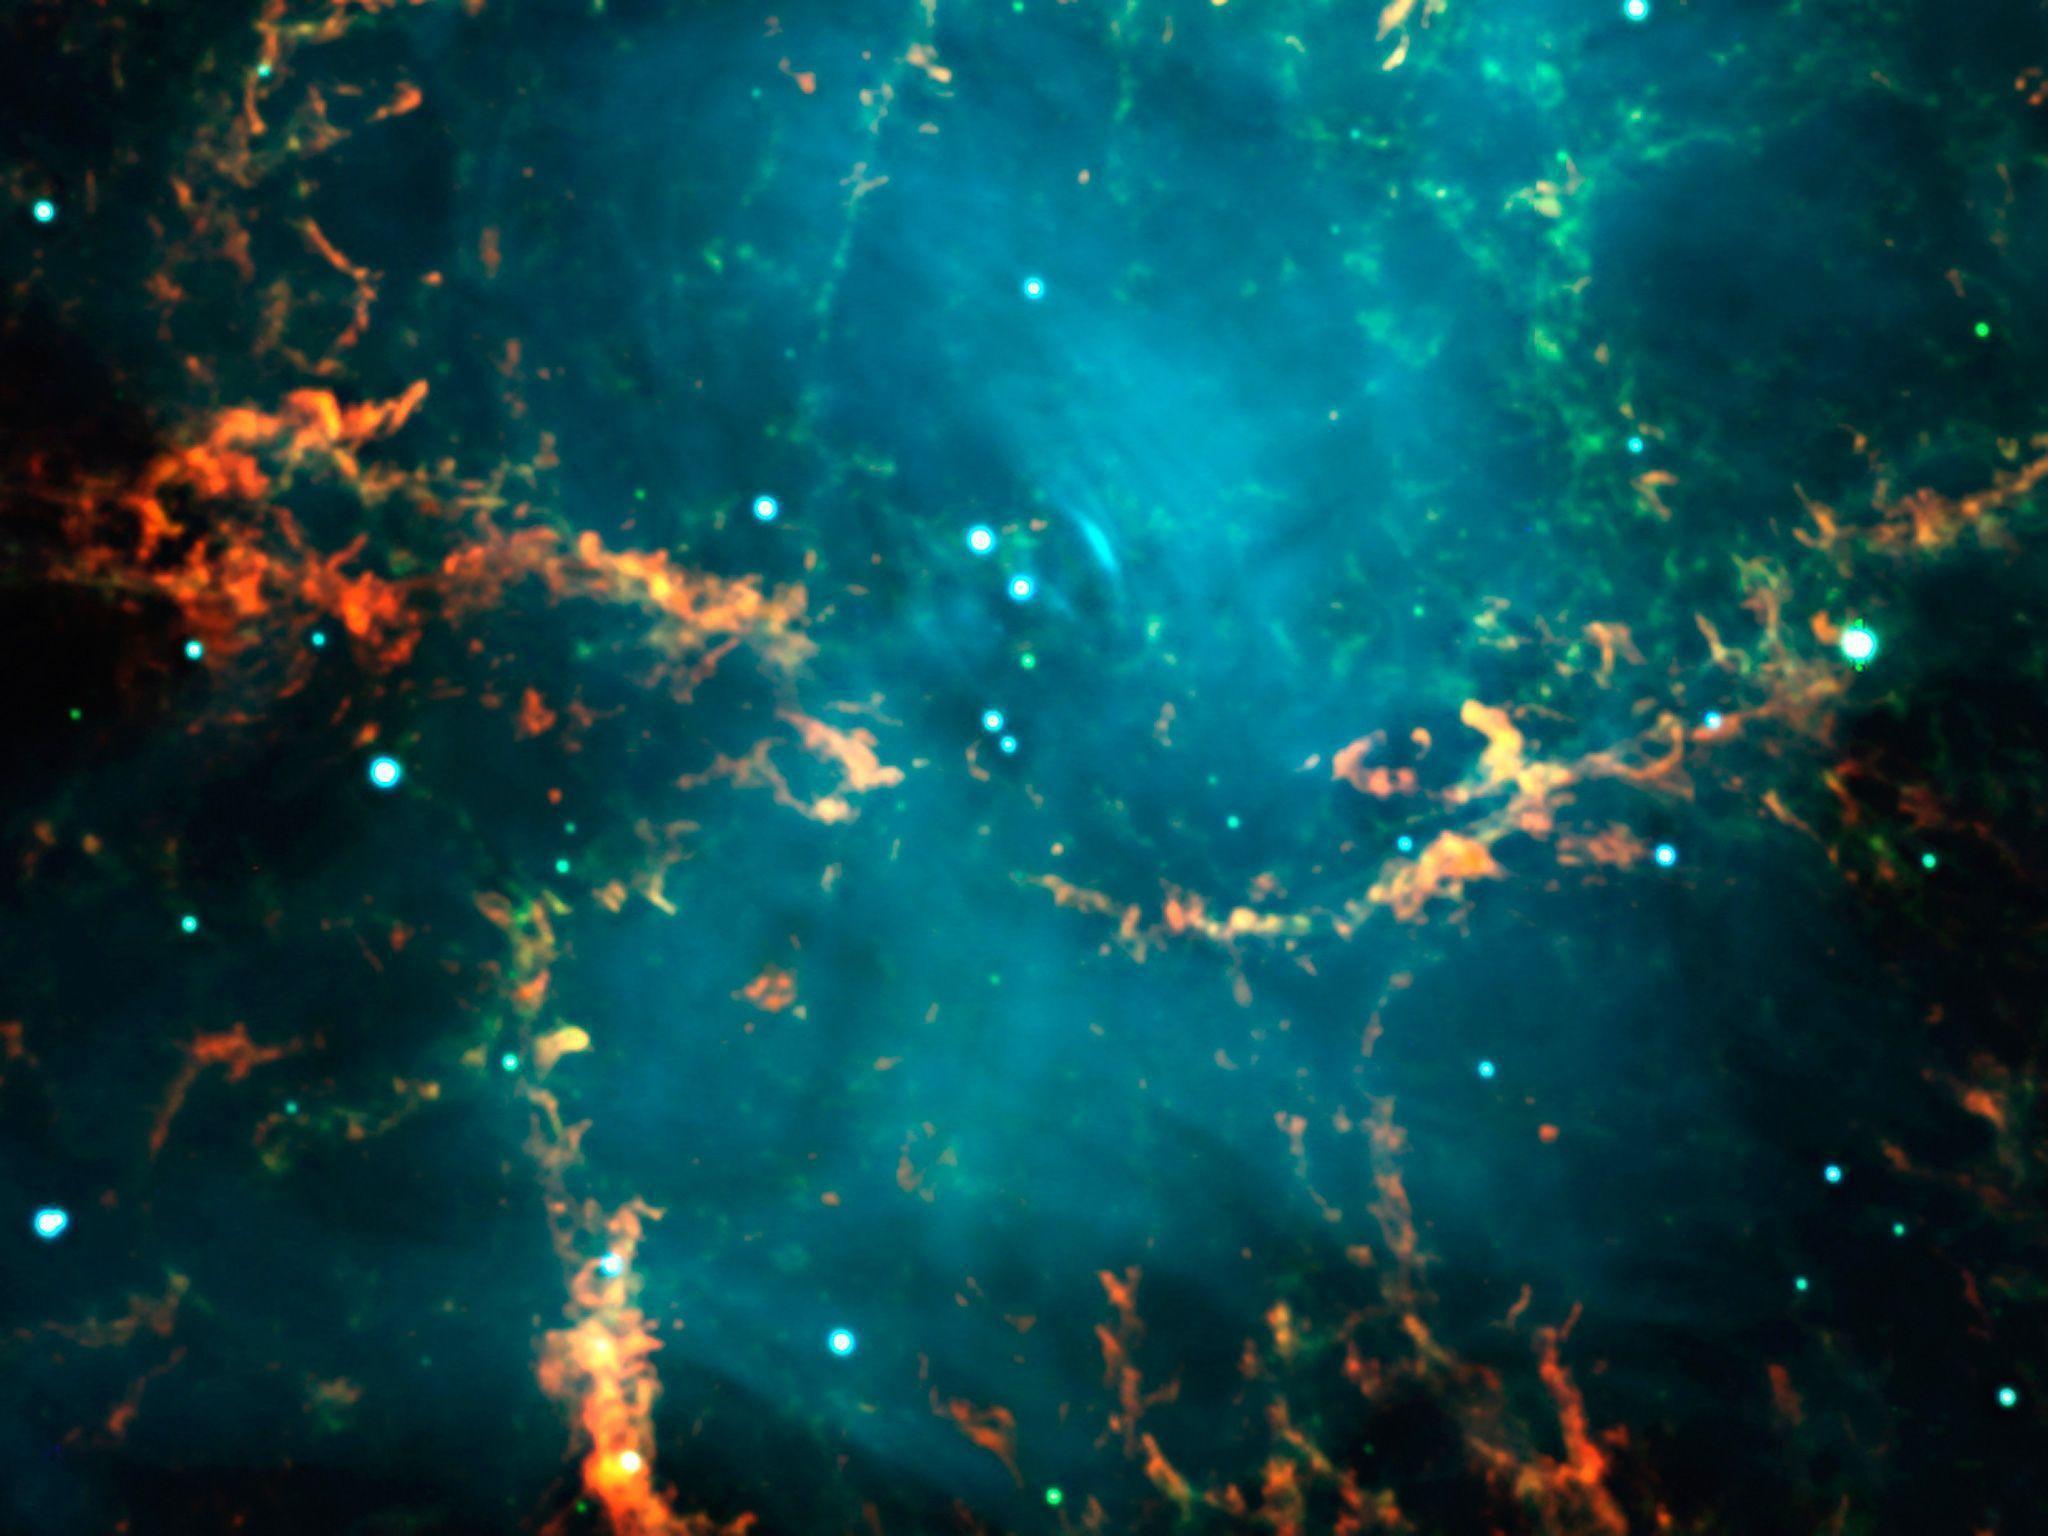 Image Archive: Nebulae